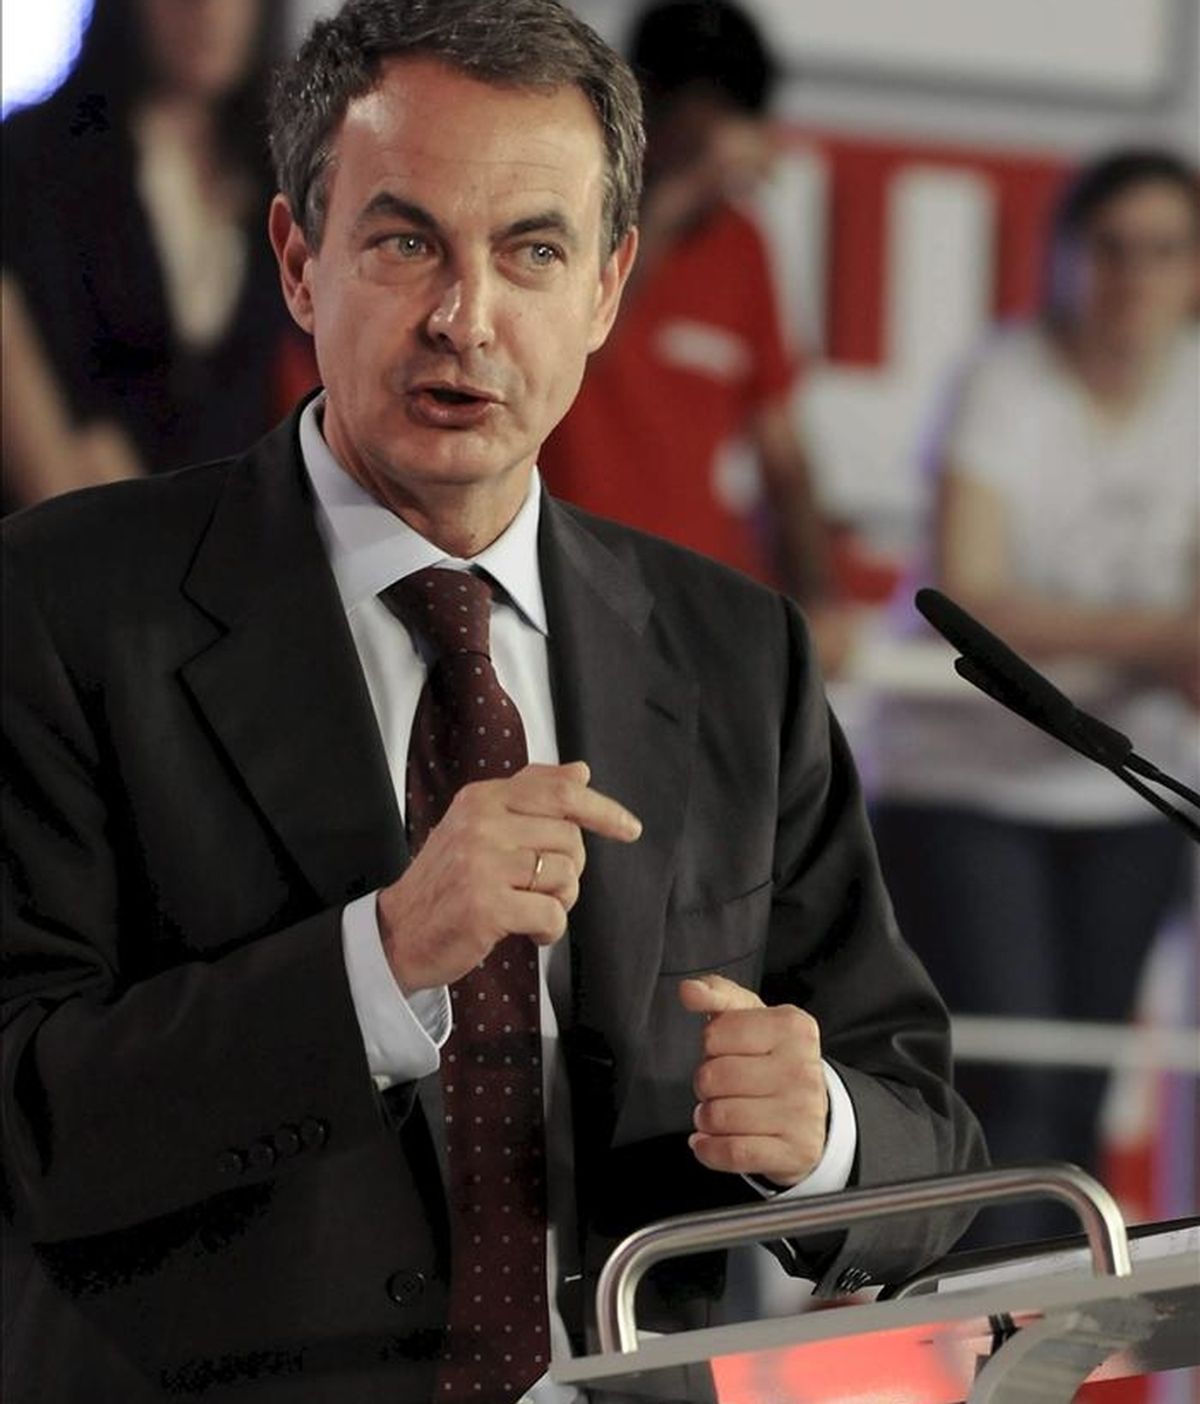 El presidente del Gobierno y secretario general del PSOE, José Luis Rodríguez Zapatero, durante su participación en el primer mitin de campaña para las elecciones municipales y autonómicas que se ha celebrado en León. EFE